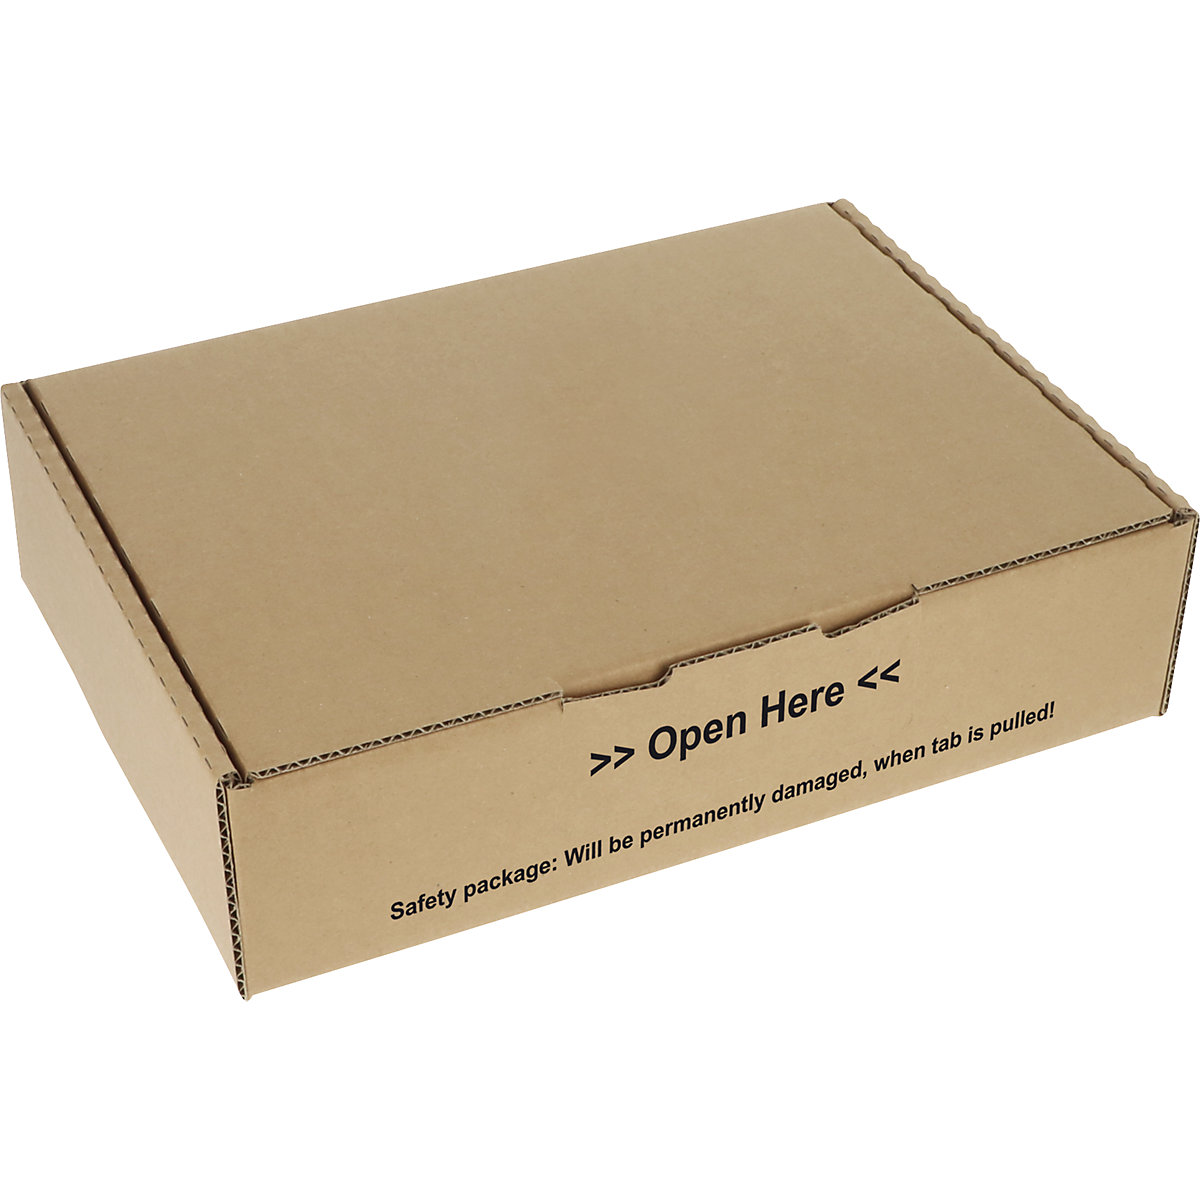 Klappbox mit Siegelverschluss, braun, VE 20 Stk, Innen-LxBxH 300 x 220 x 80 mm